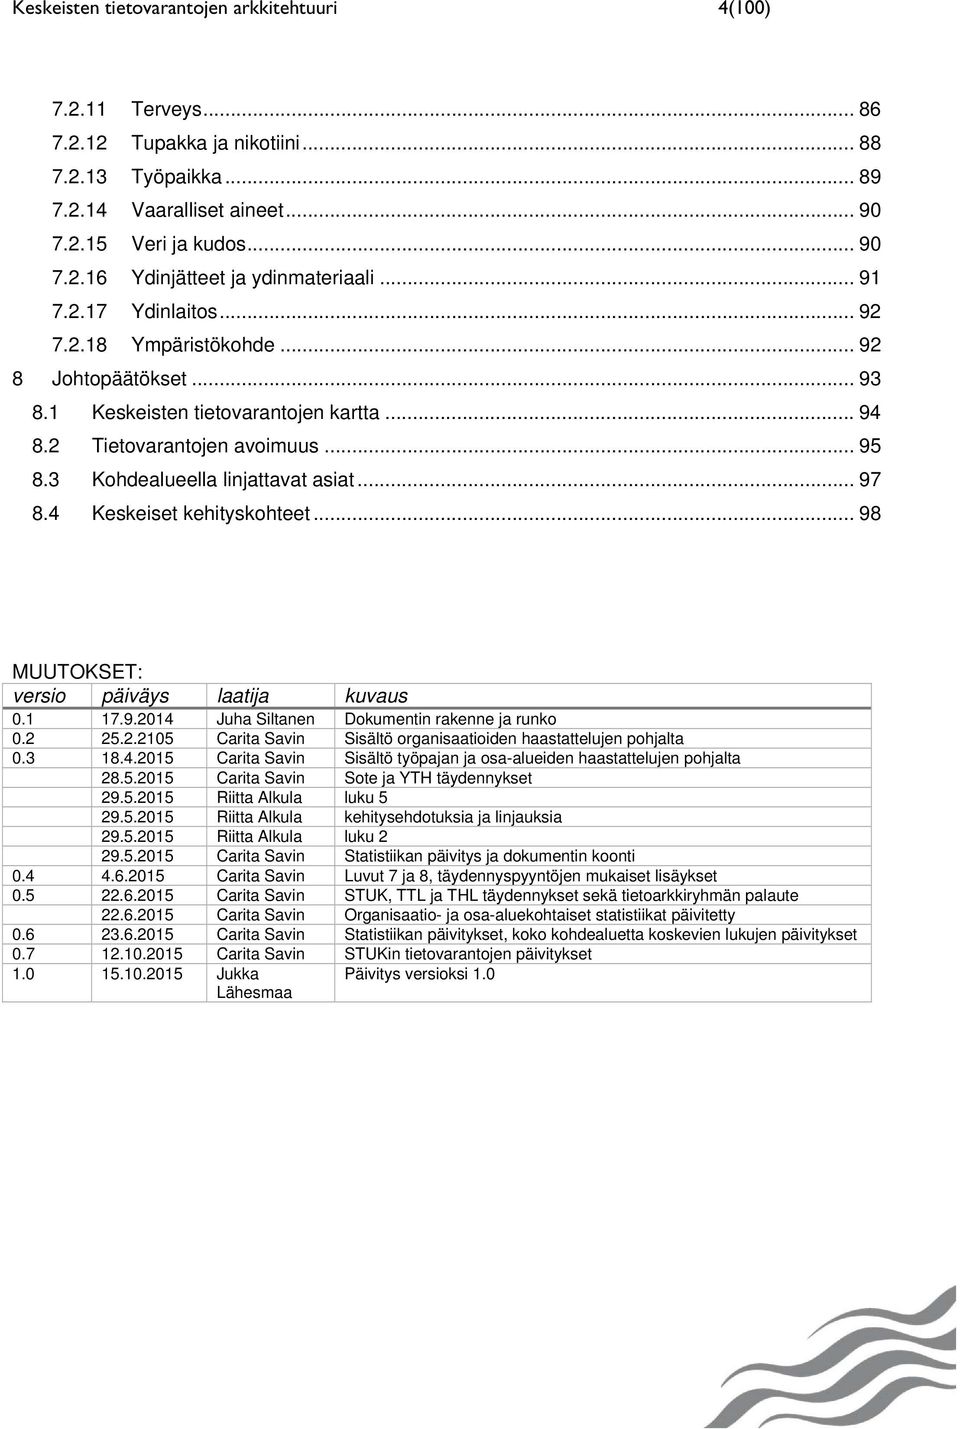 4 Keskeiset kehityskohteet... 98 MUUTOKSET: versio päiväys laatija kuvaus 0.1 17.9.2014 Juha Siltanen Dokumentin rakenne ja runko 0.2 25.2.2105 Carita Savin Sisältö organisaatioiden haastattelujen pohjalta 0.